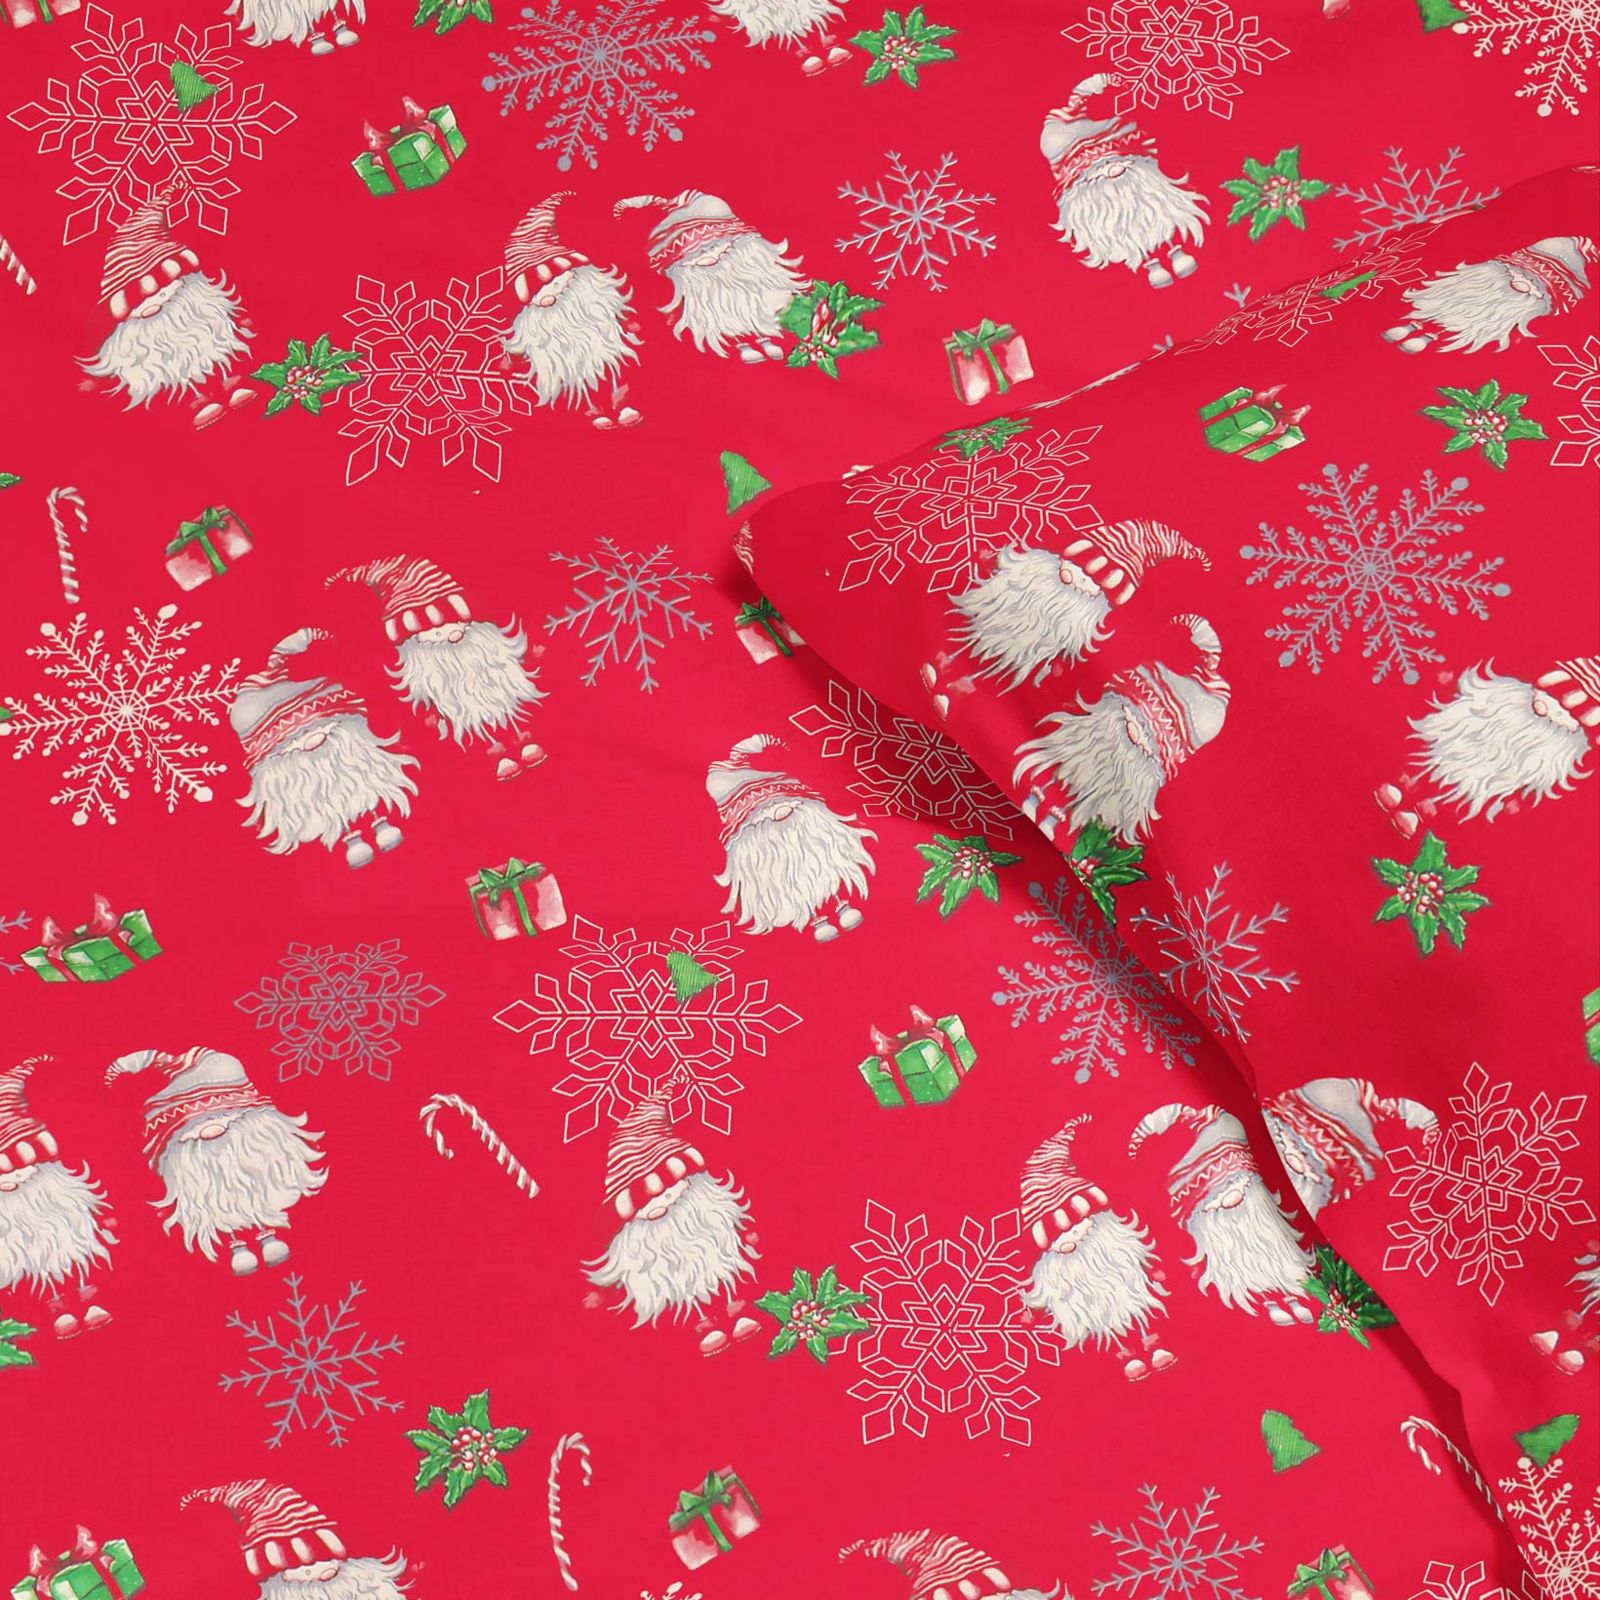 Vianočné bavlnené posteľné obliečky - škriatkovia na červenom